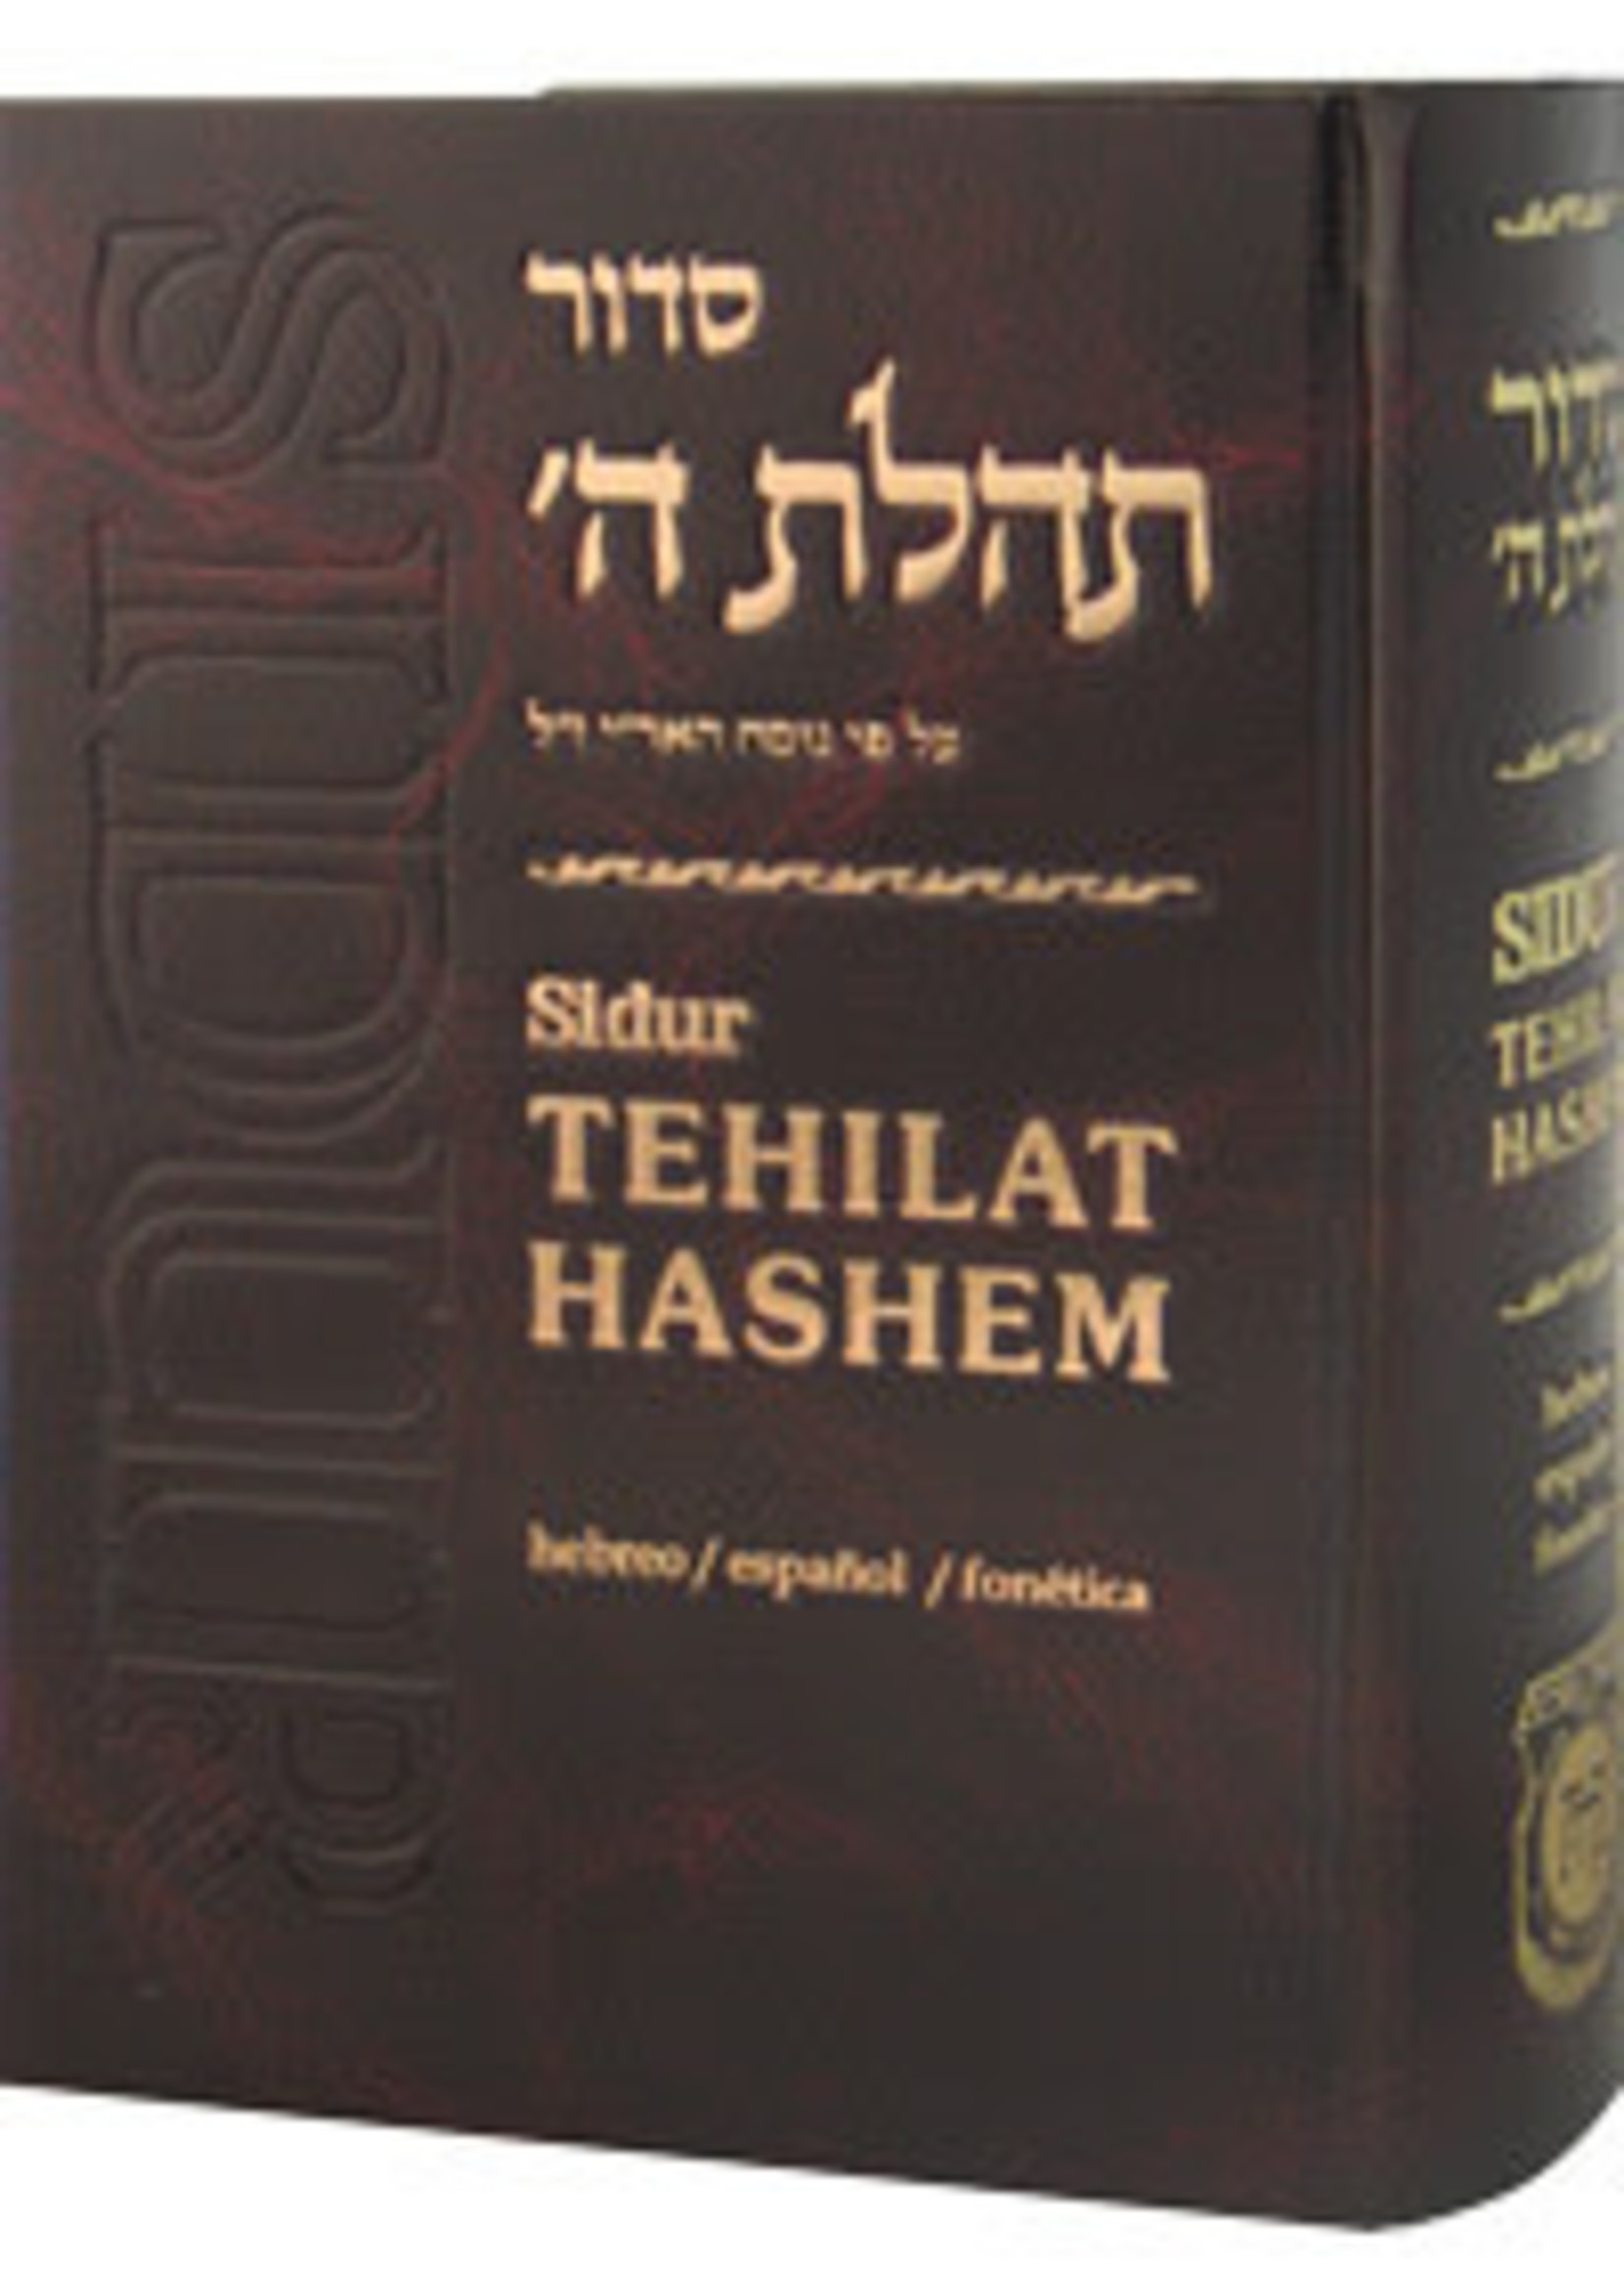 Siddur Tehillat hashem (Spanish)